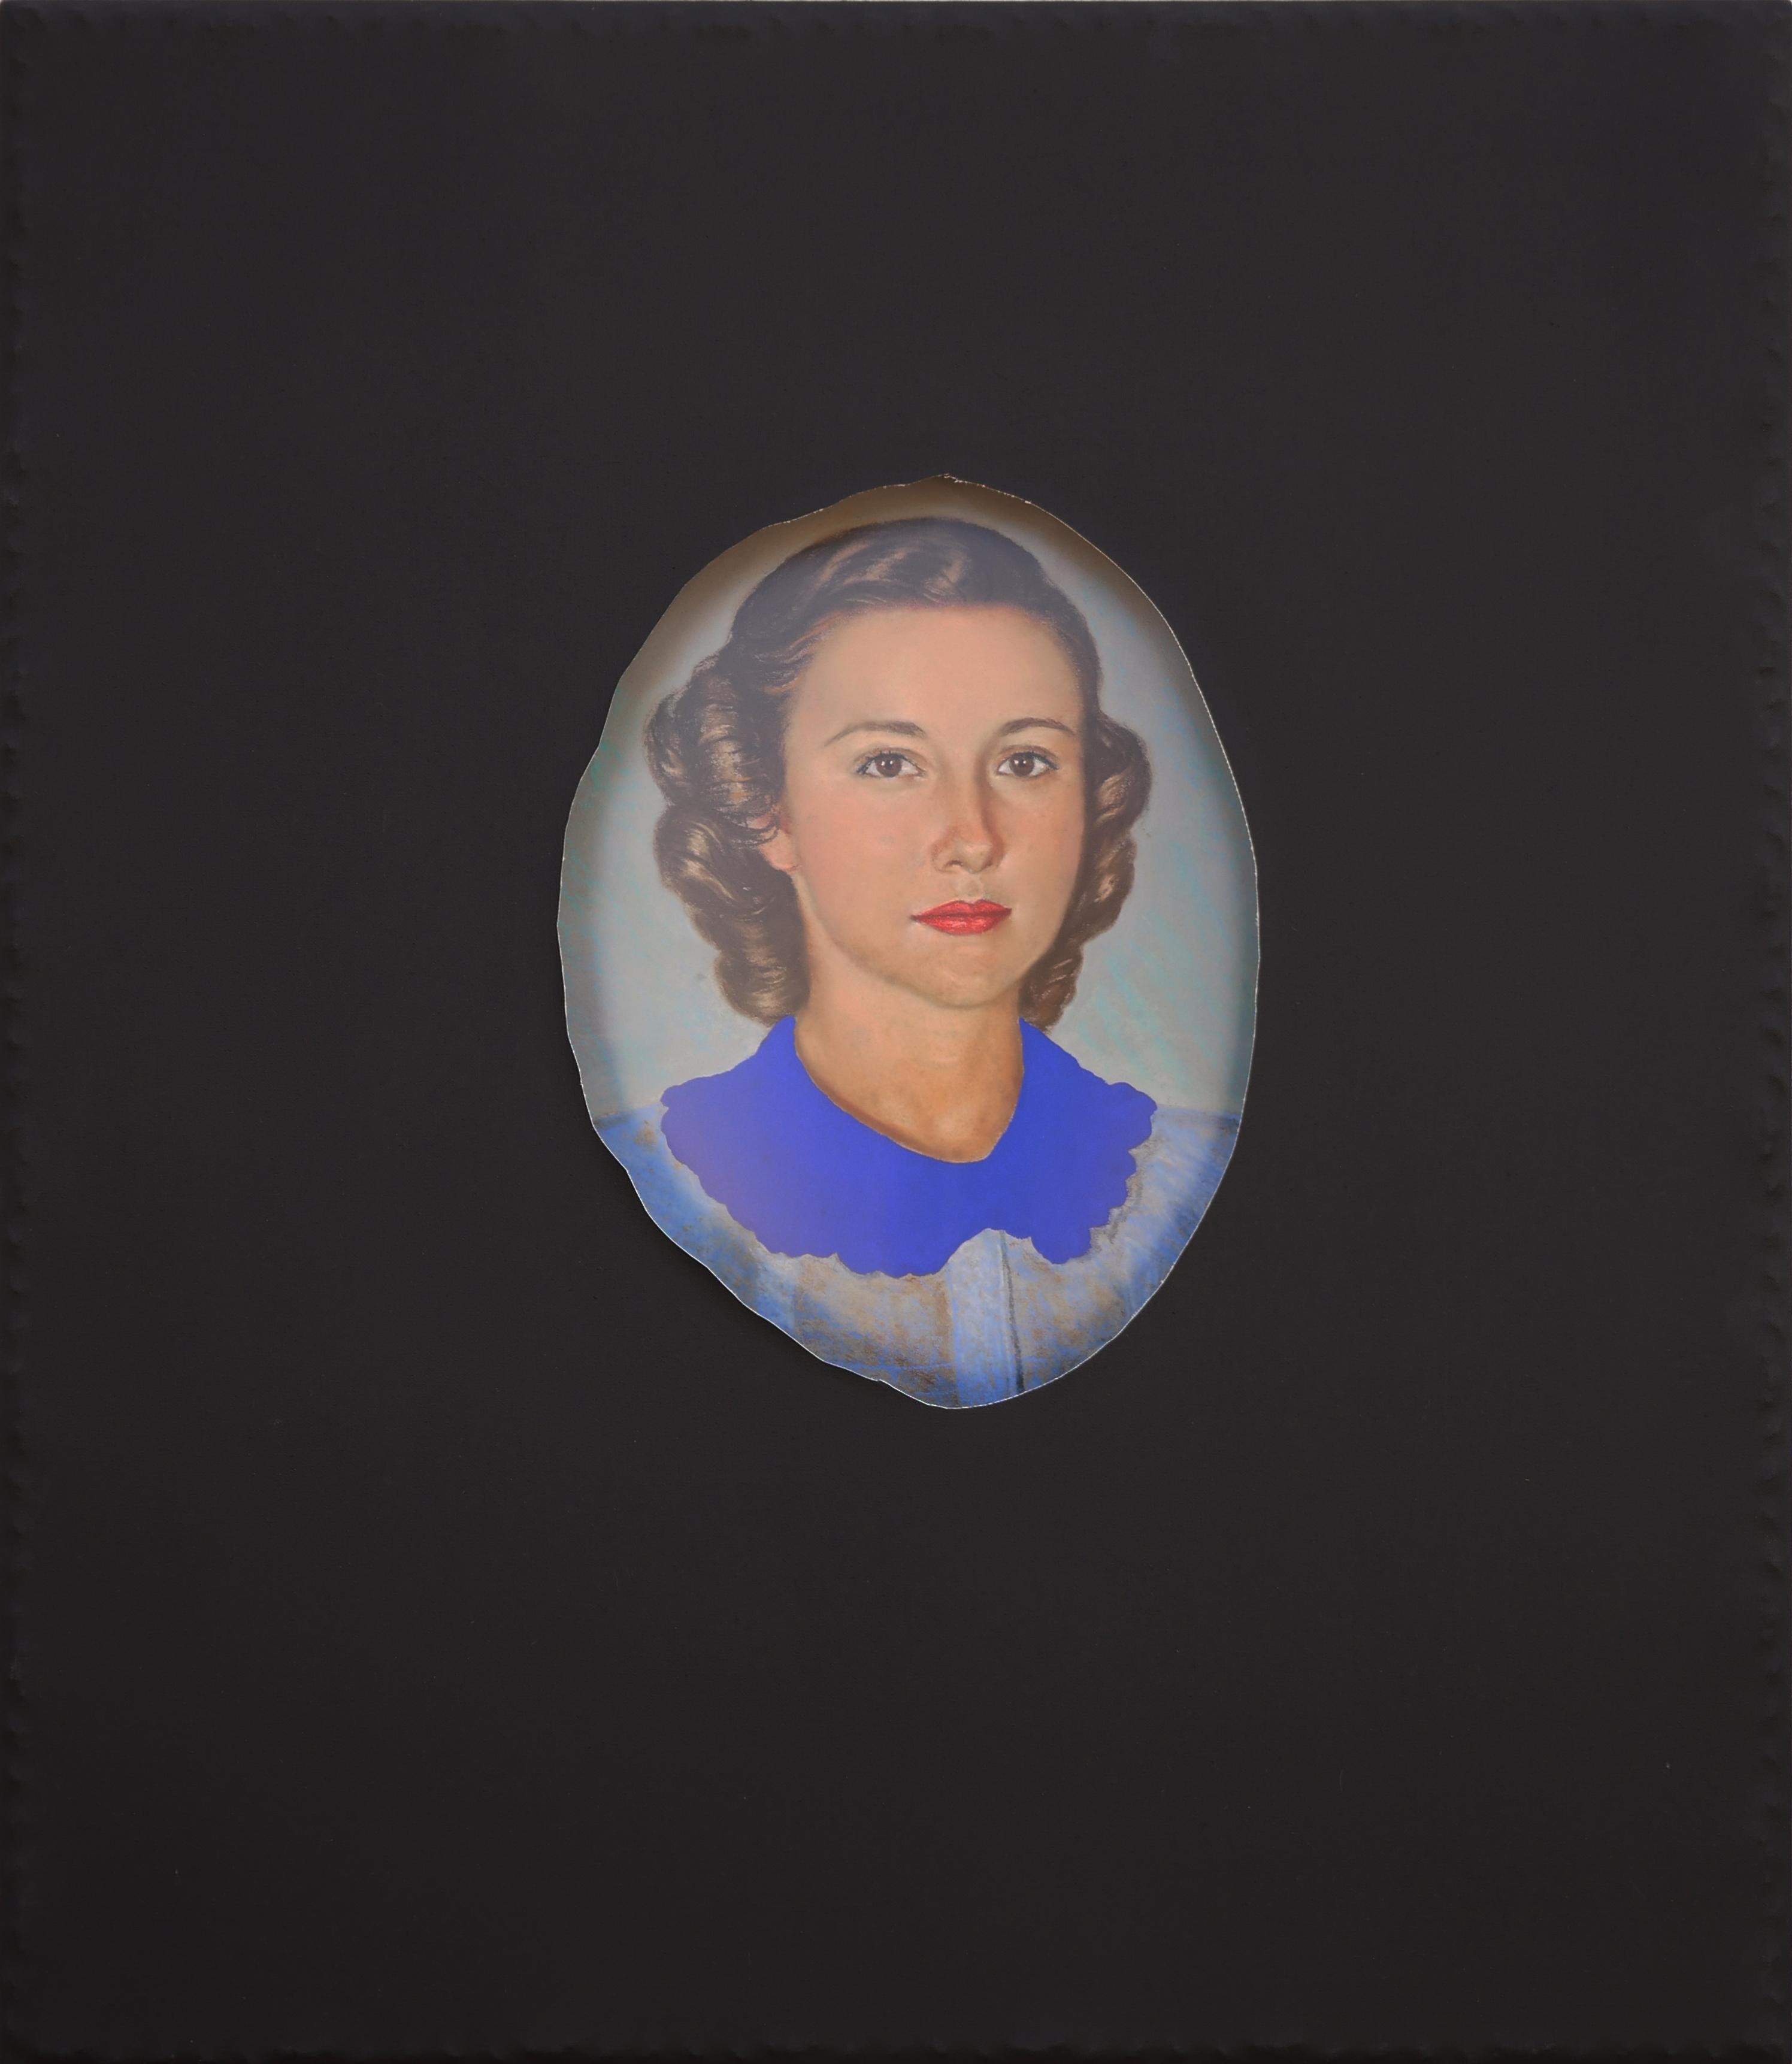 Matthew Reeves Portrait Painting – Zeitgenössisches ""Gertrude"-Porträt aus schwarzer Leinwand mit lebhaftem blauem Kragen